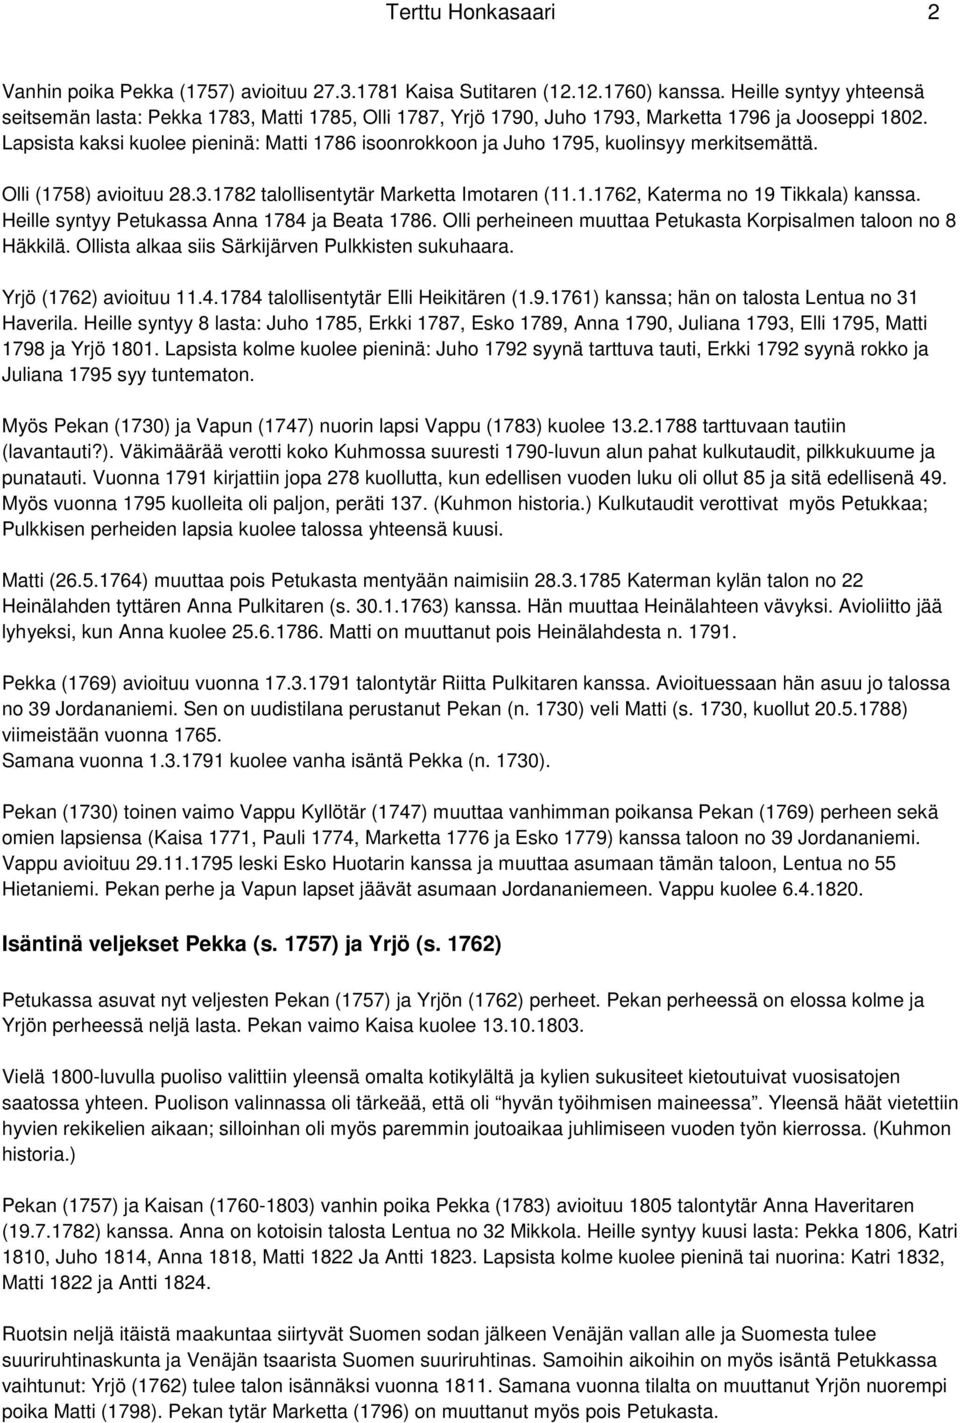 Lapsista kaksi kuolee pieninä: Matti 1786 isoonrokkoon ja Juho 1795, kuolinsyy merkitsemättä. Olli (1758) avioituu 28.3.1782 talollisentytär Marketta Imotaren (11.1.1762, Katerma no 19 Tikkala) kanssa.